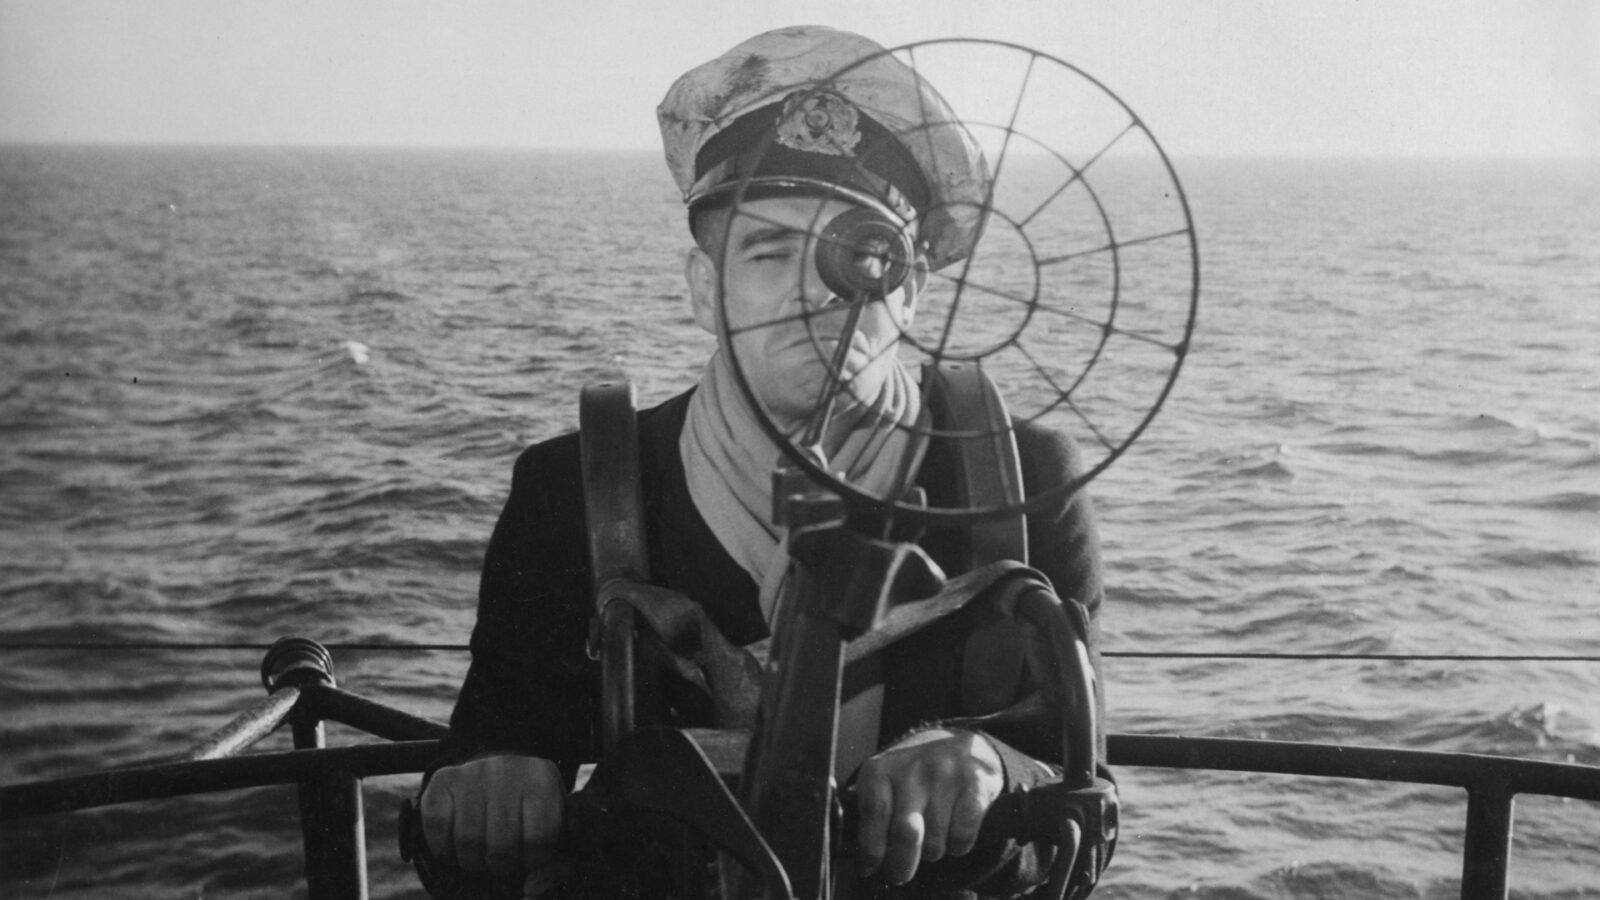 Filmstill Das Boot der Verdammten. Ein Mann mit Kapitänsmütze steht a ei e Gerät, durch das er hindurch schaut. Im Hintergrund befindet sich nur Wasser bis zum Horizont.